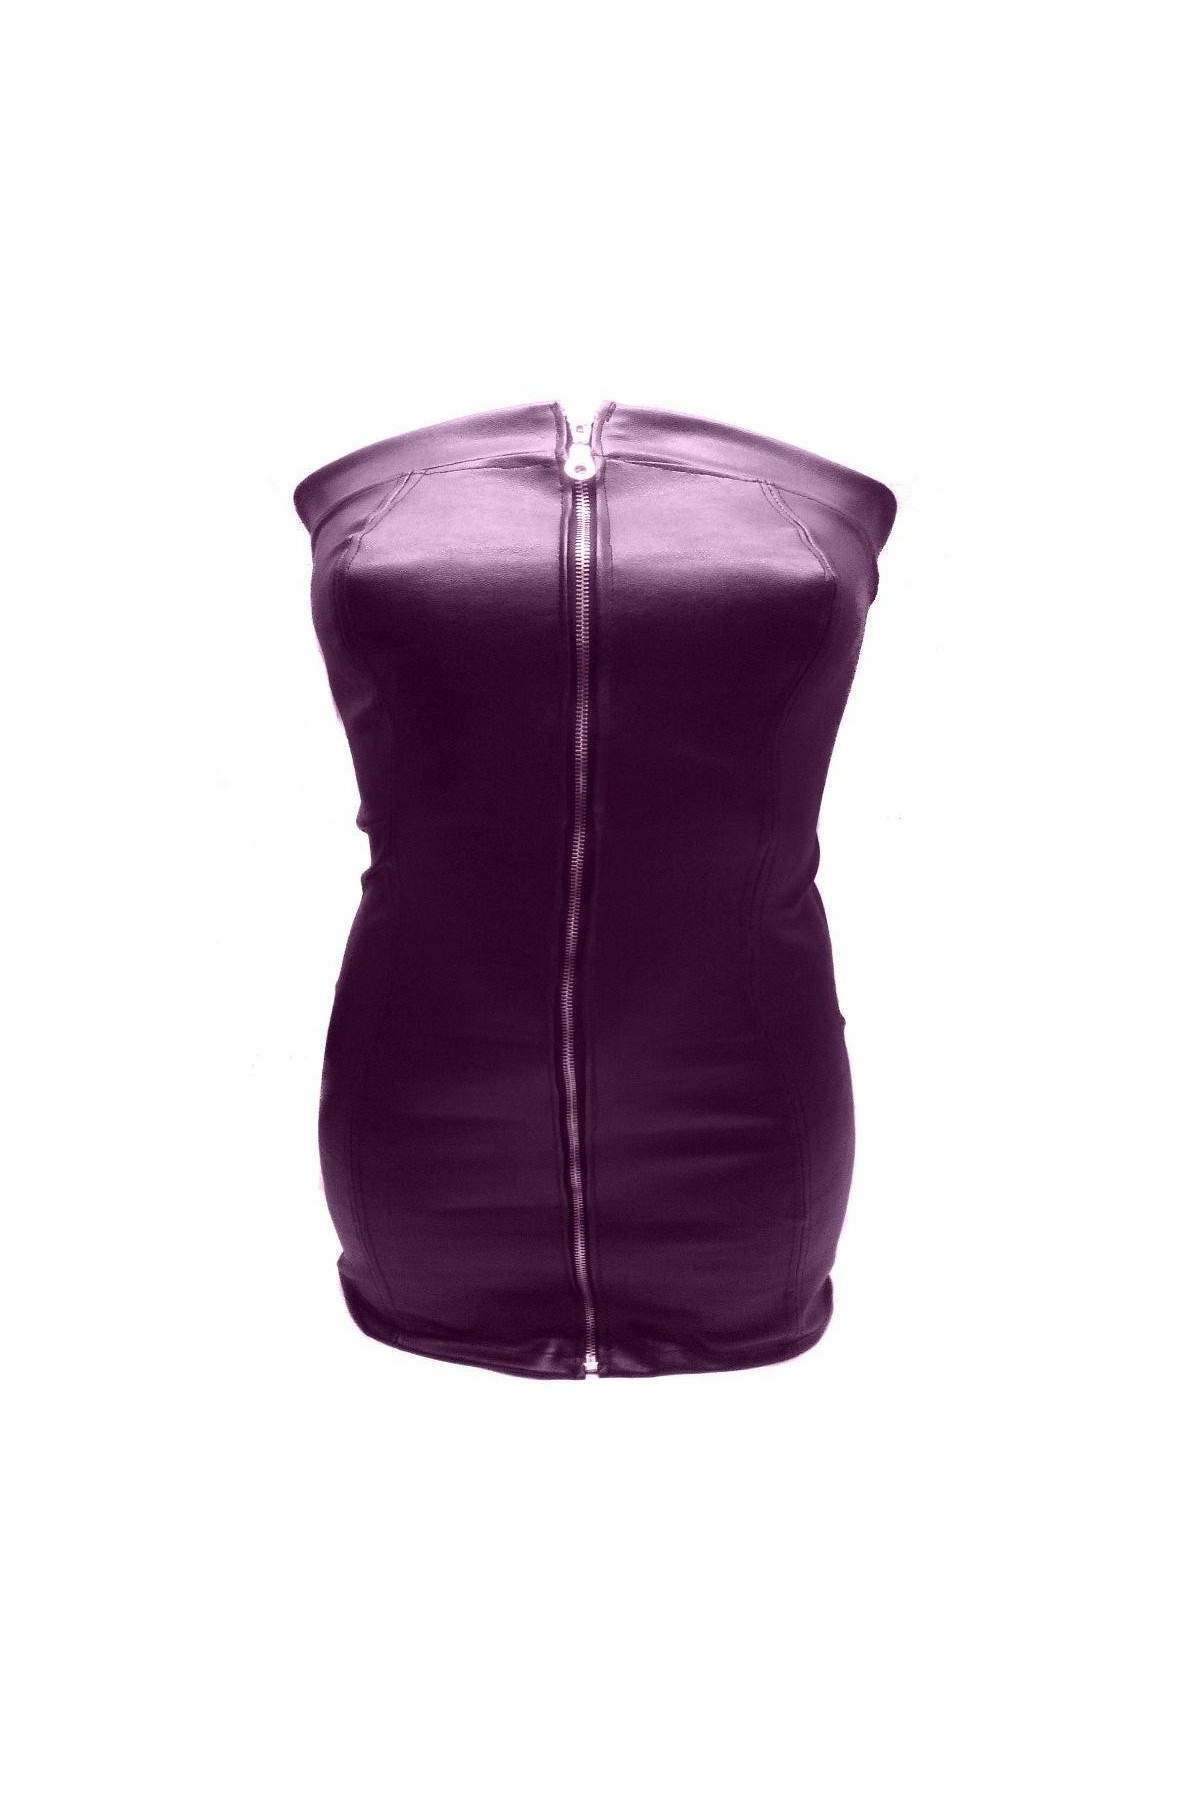 Designer Softleather Dress purple size L - XXL (44 - 52) - Deutsche Produktion